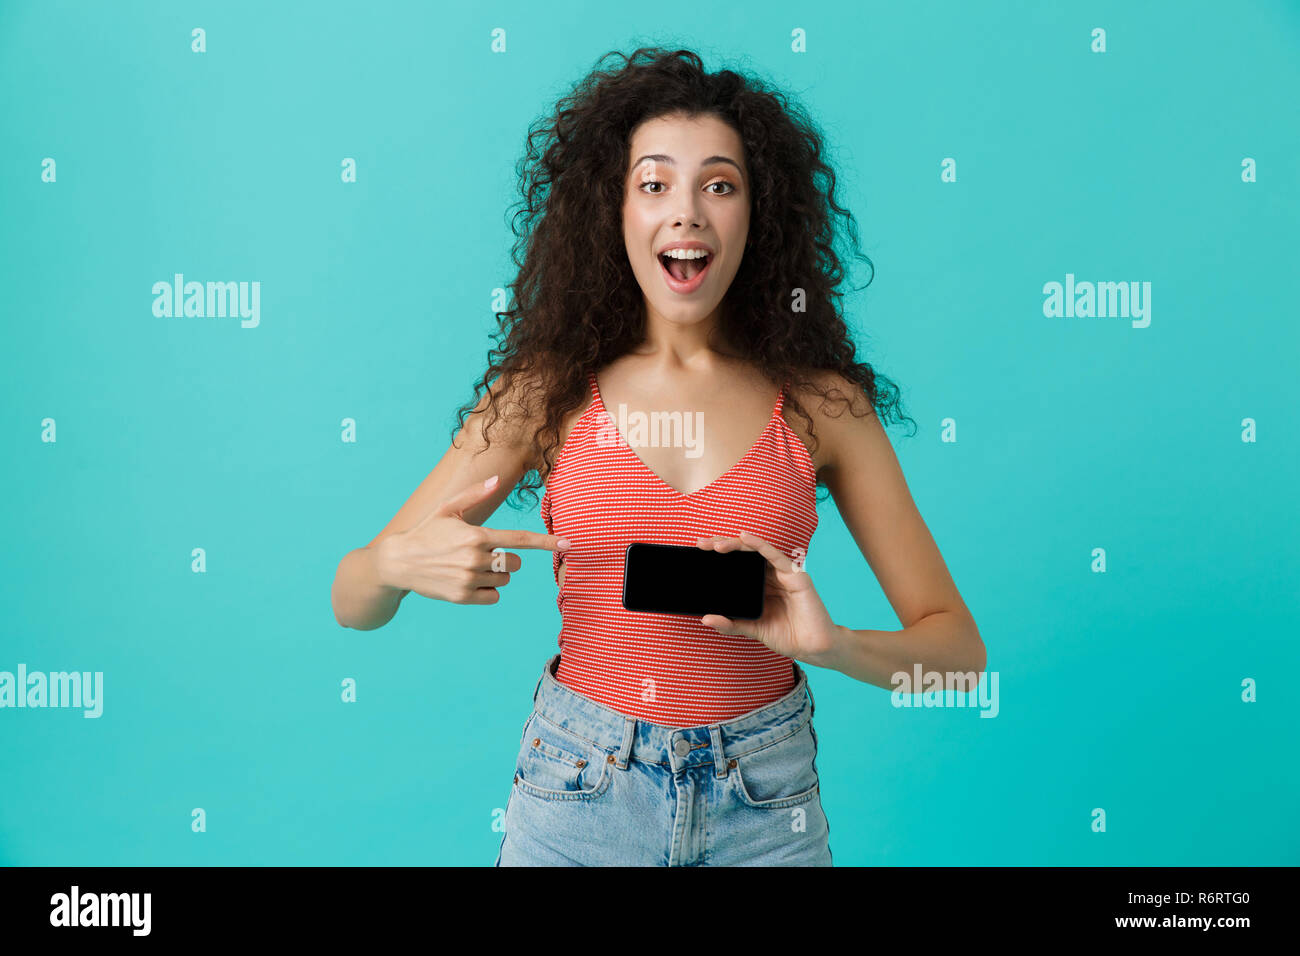 Photo de charmante femme 20s avec des cheveux bouclés souriant et holding smartphone isolé sur fond bleu Banque D'Images